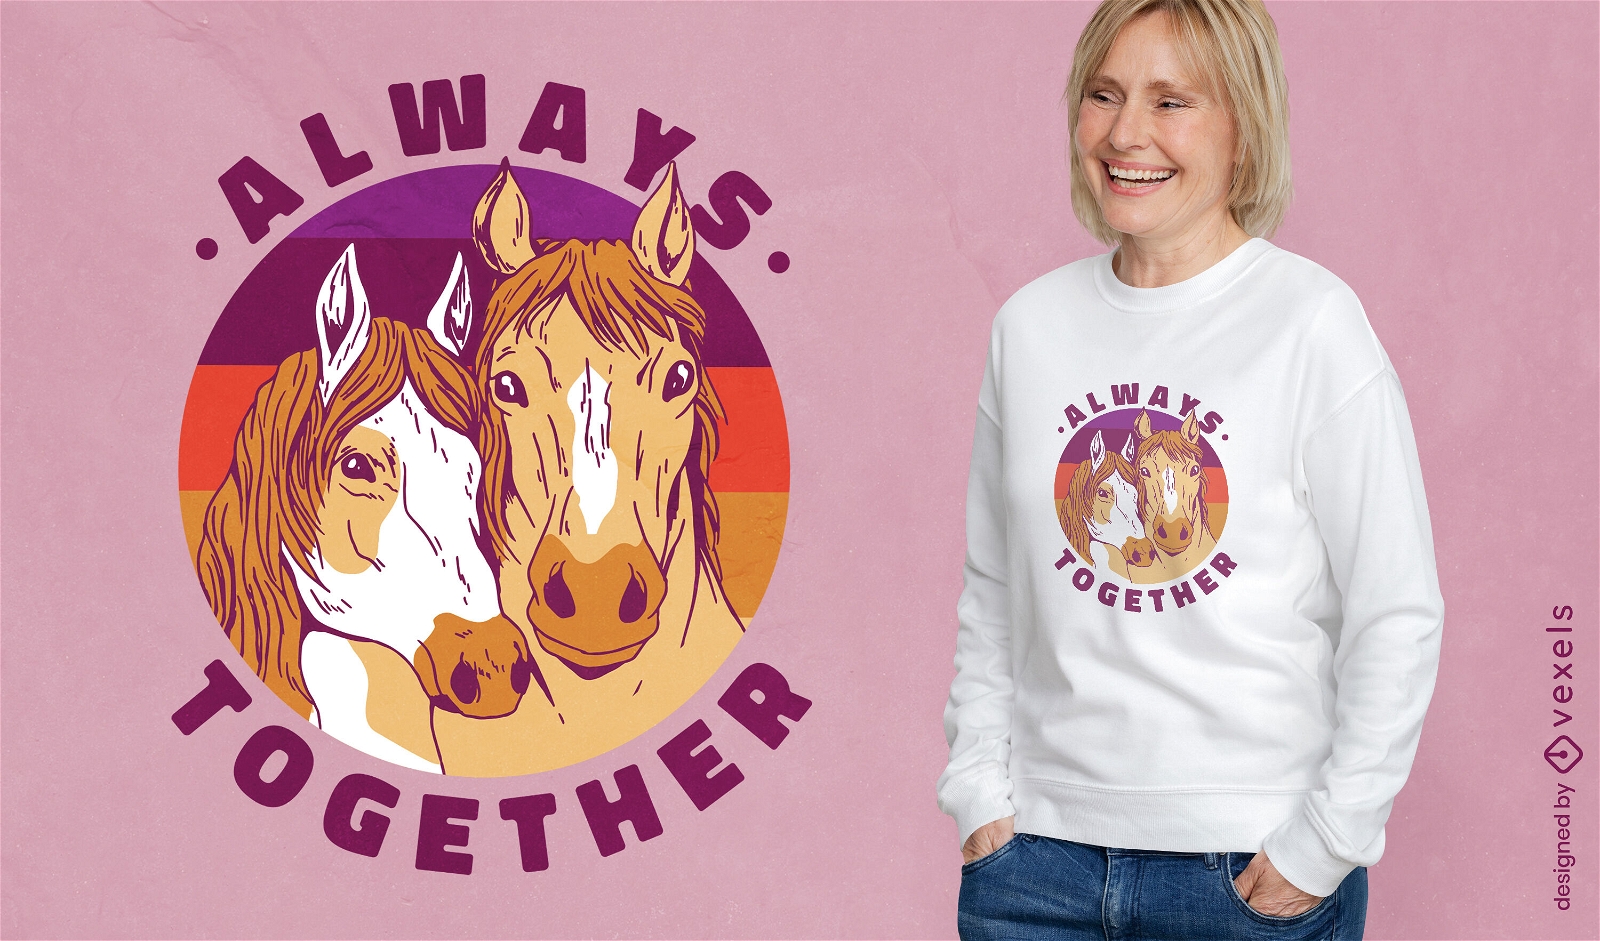 Always together horses t-shirt design